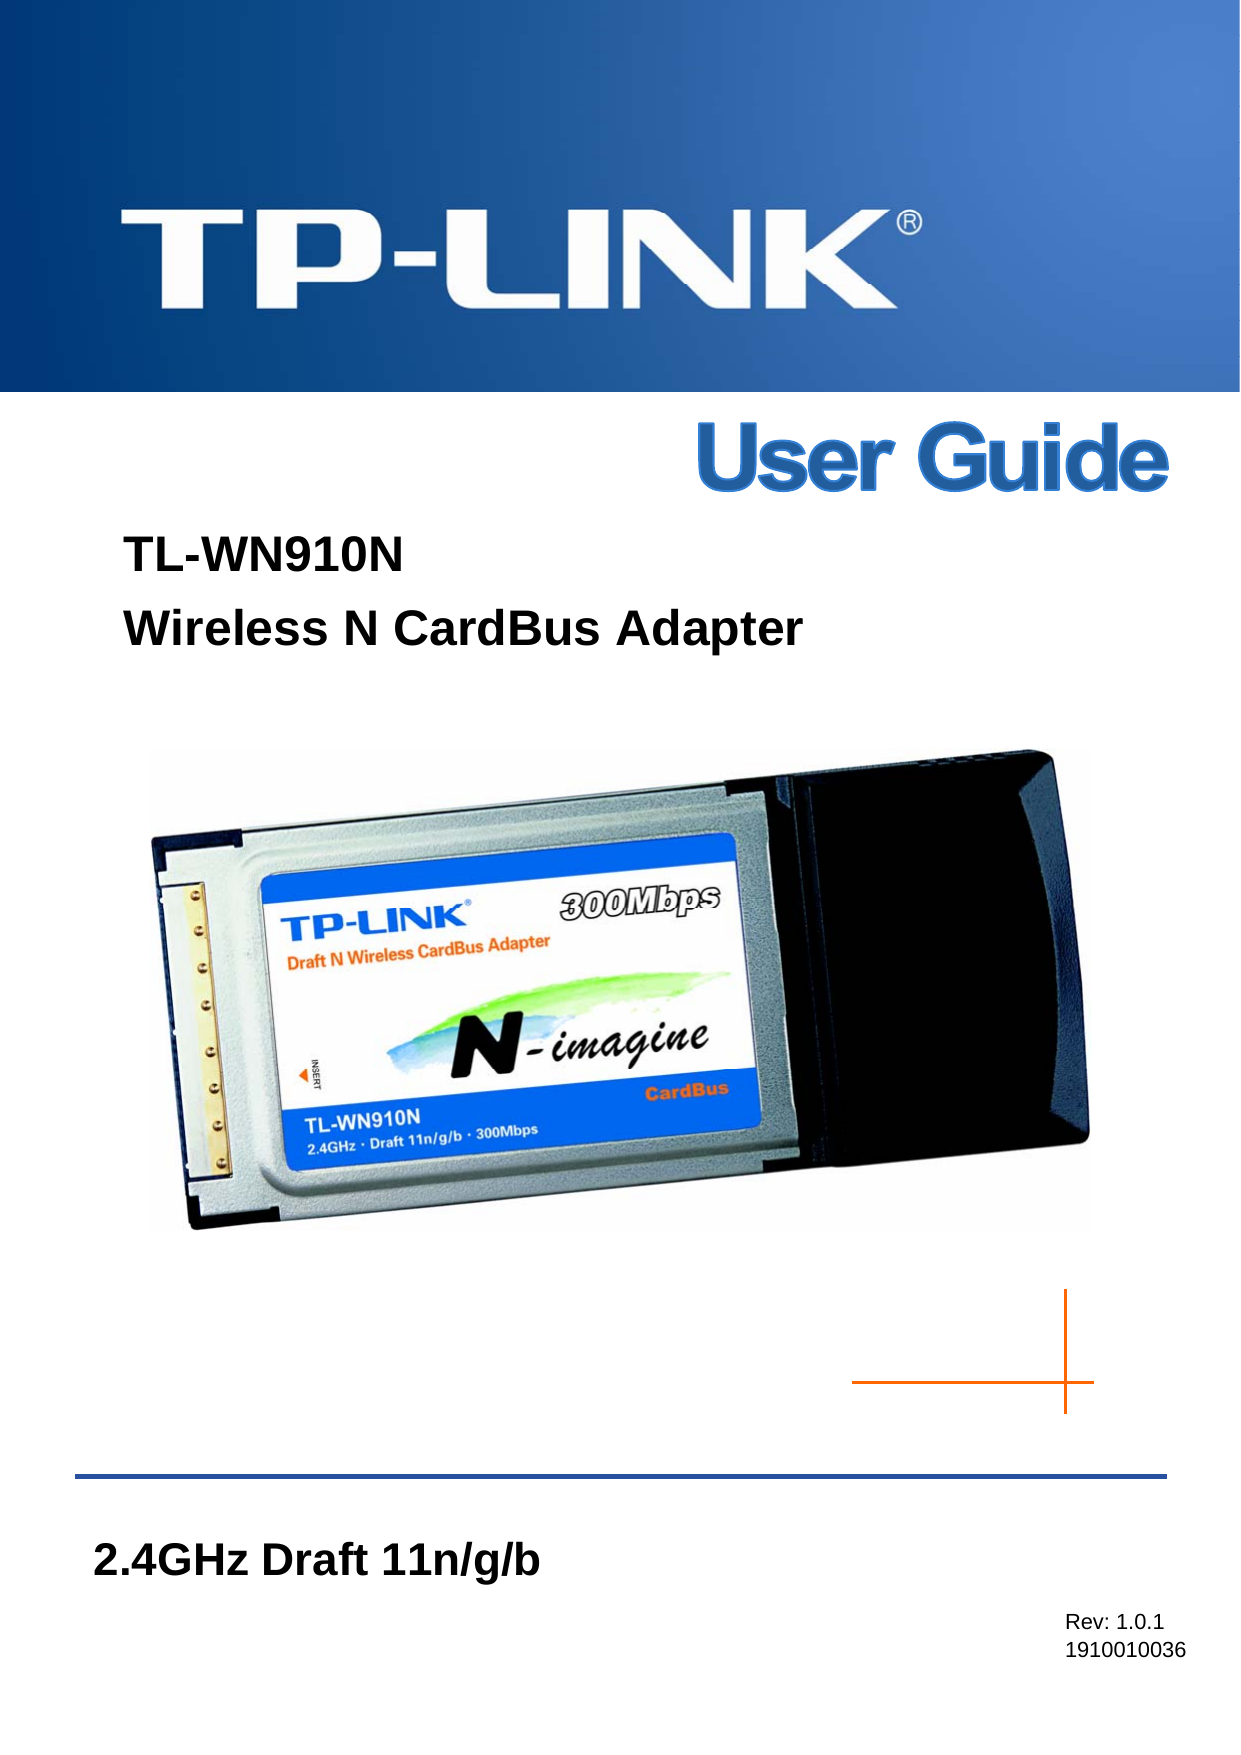    TL-WN910N Wireless N CardBus Adapter          Rev: 1.0.1 1910010036 2.4GHz Draft 11n/g/b 